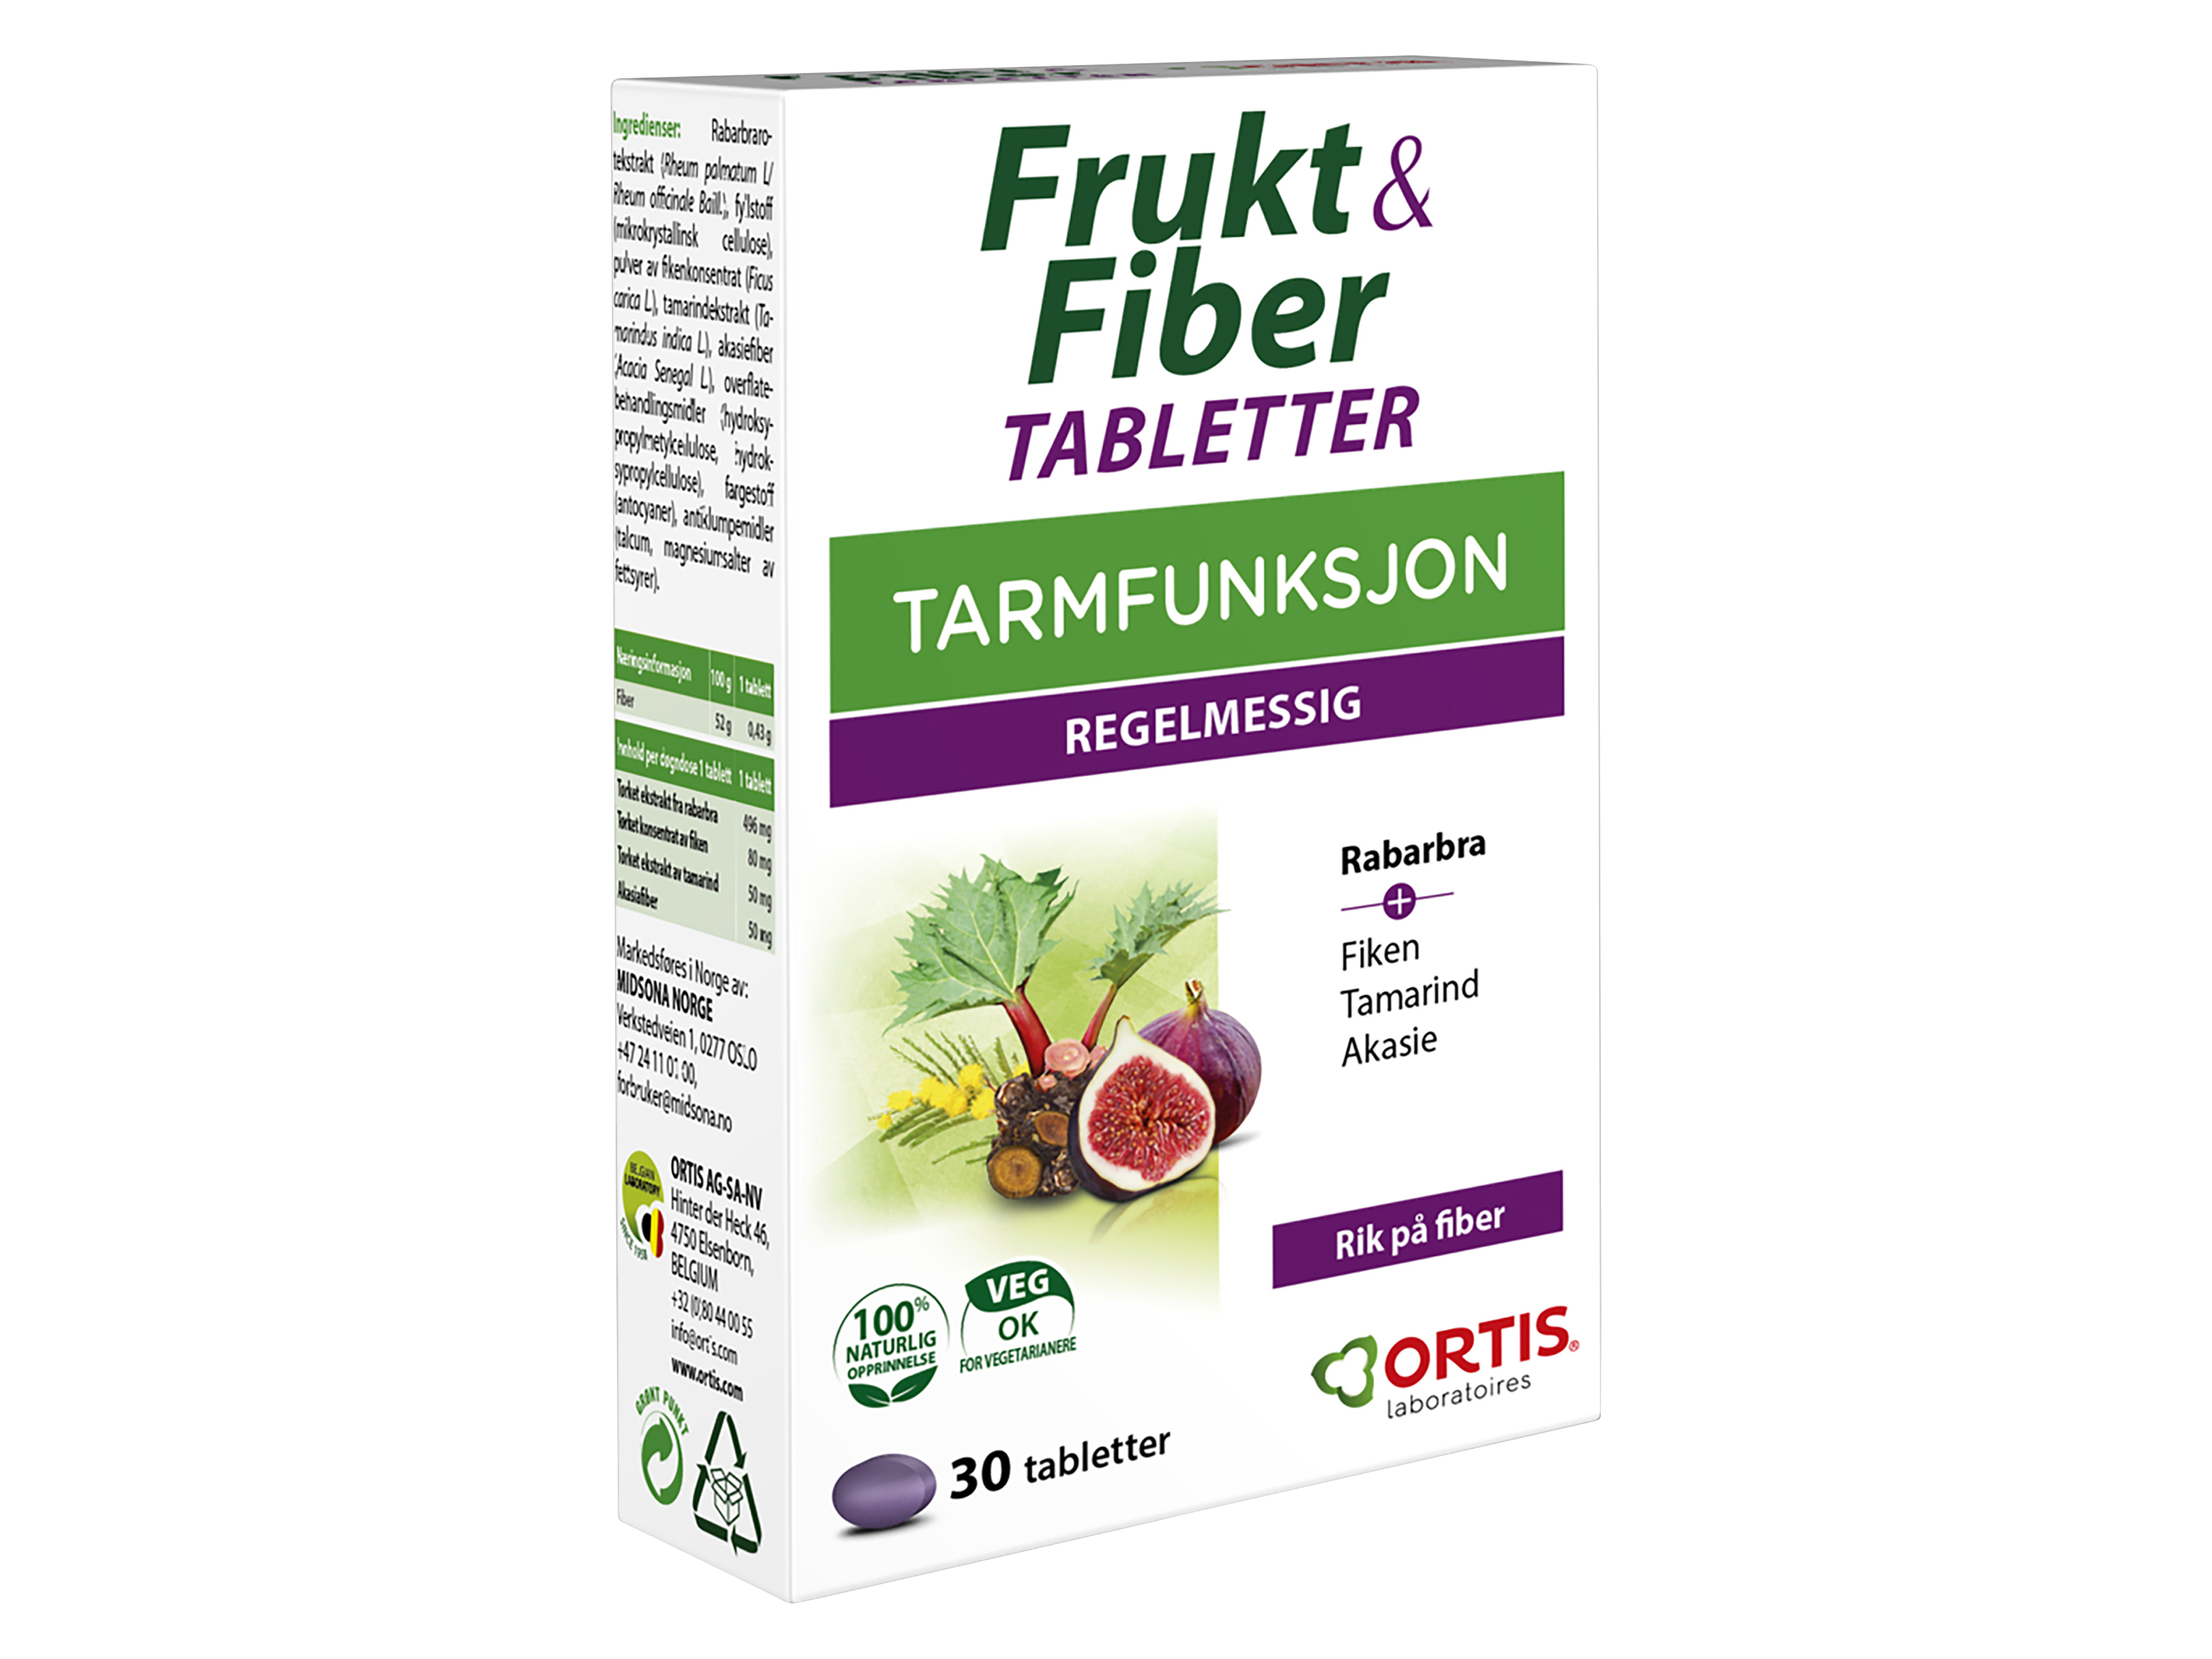 Frukt & Fiber Tabletter, 30 stk. på brett